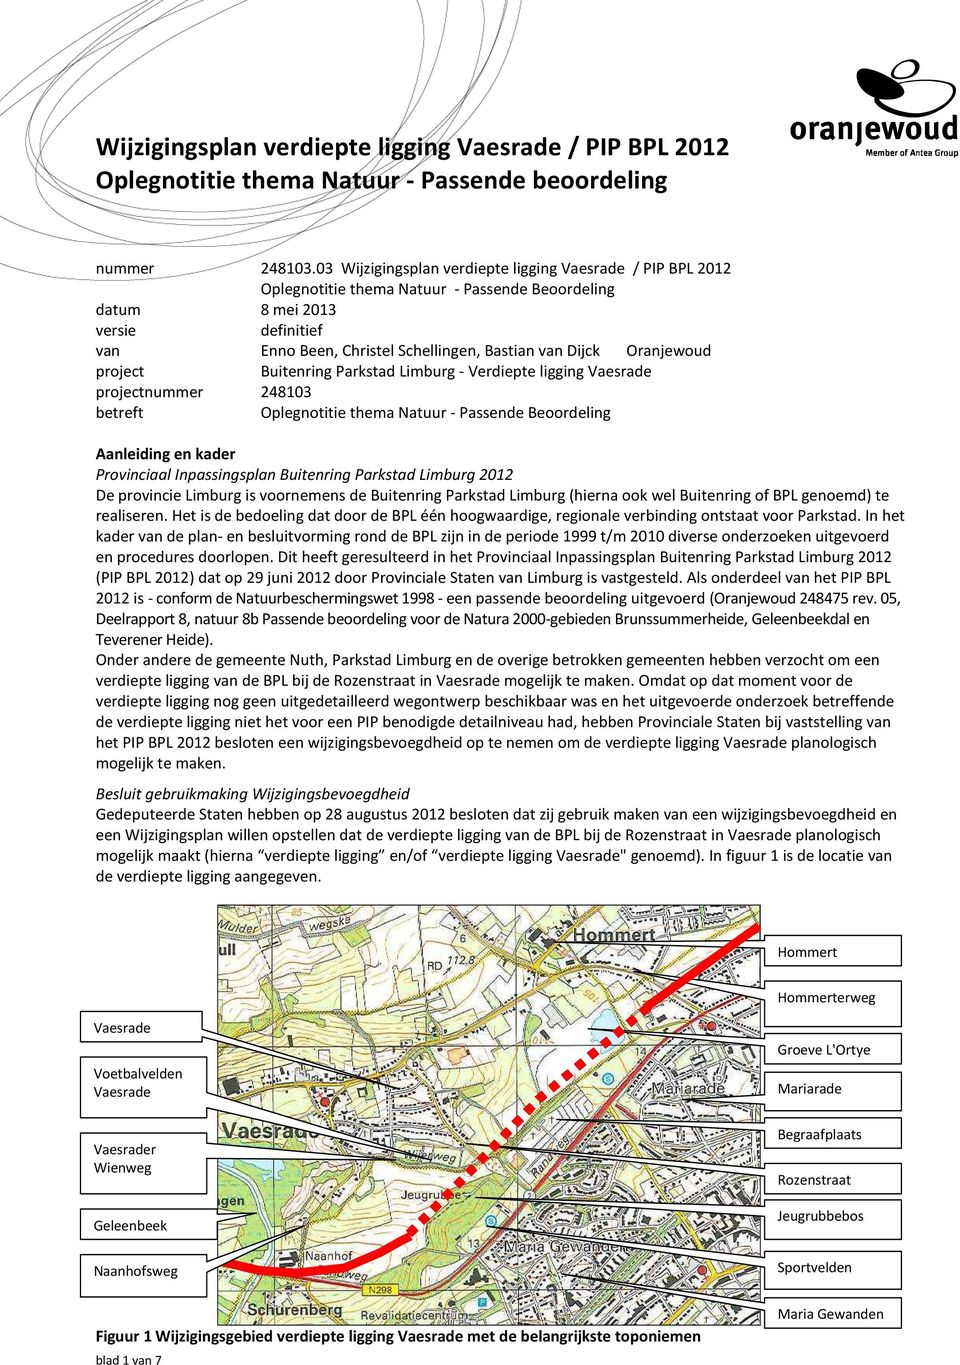 Oranjewoud project Buitenring Parkstad Limburg - Verdiepte ligging Vaesrade projectnummer 248103 betreft Oplegnotitie thema Natuur - Passende Beoordeling Aanleiding en kader Provinciaal